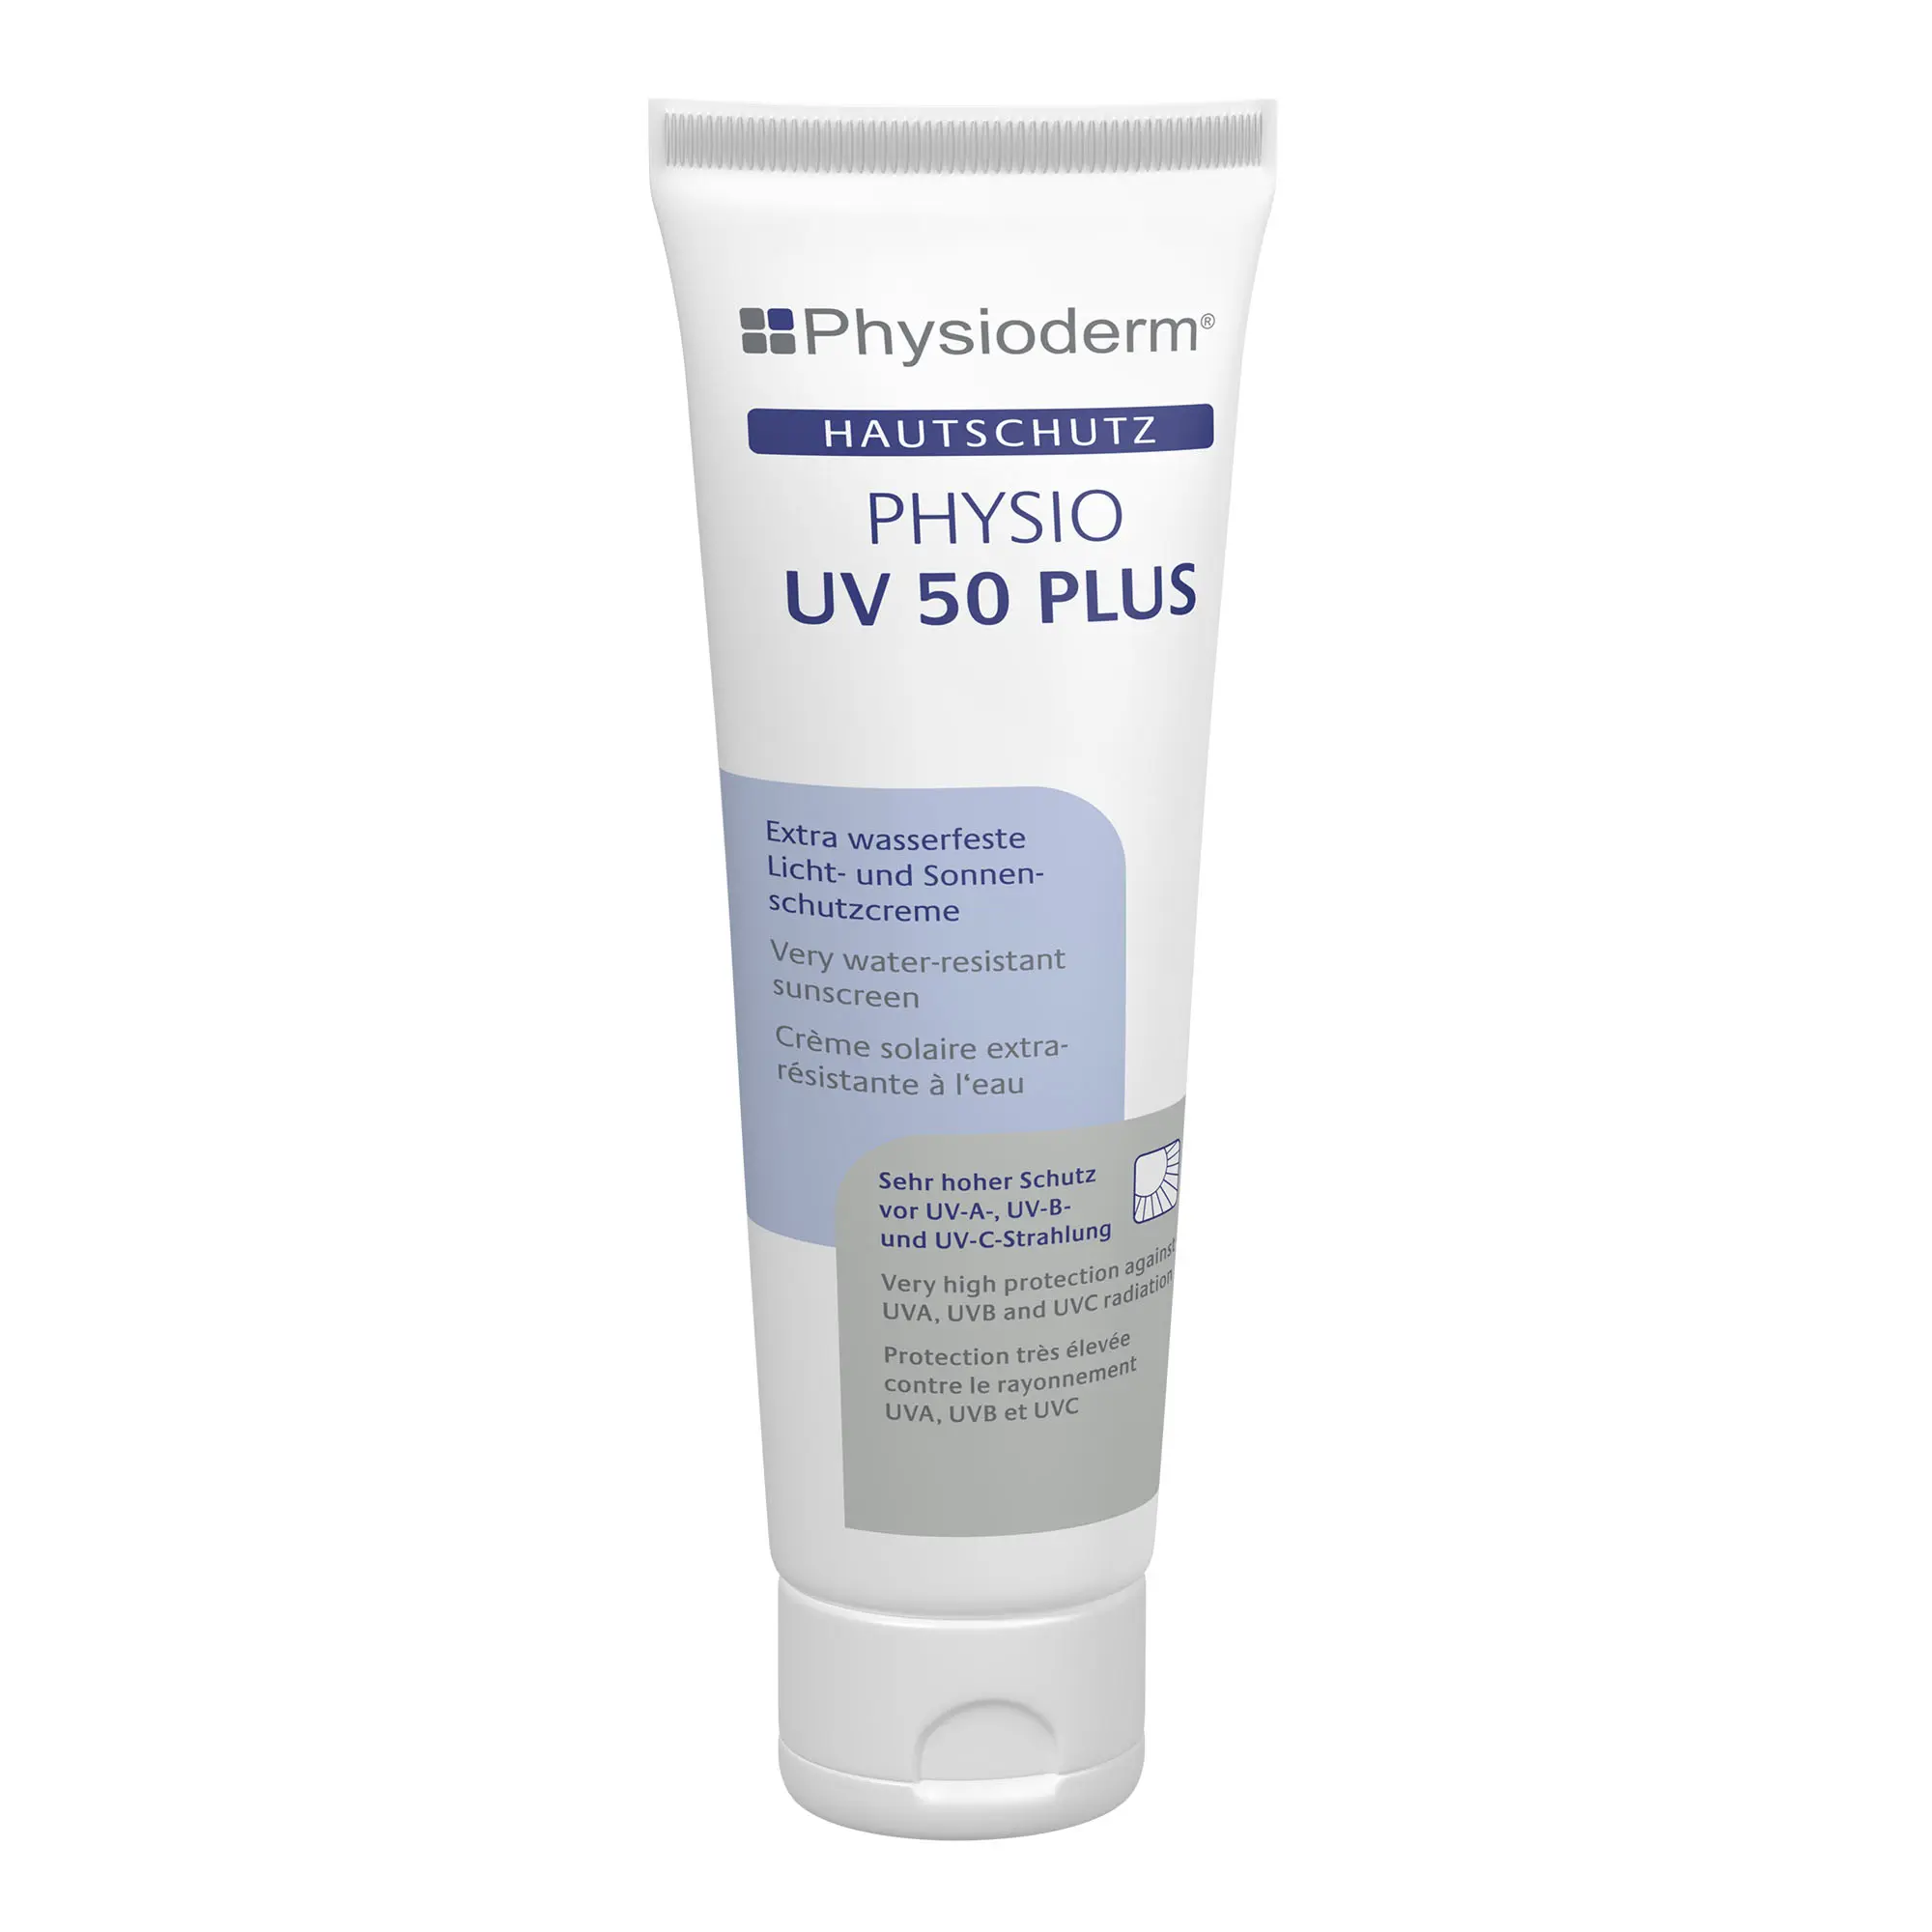 Physioderm Physio UV 50 Plus Licht- und Sonnenschutzcreme